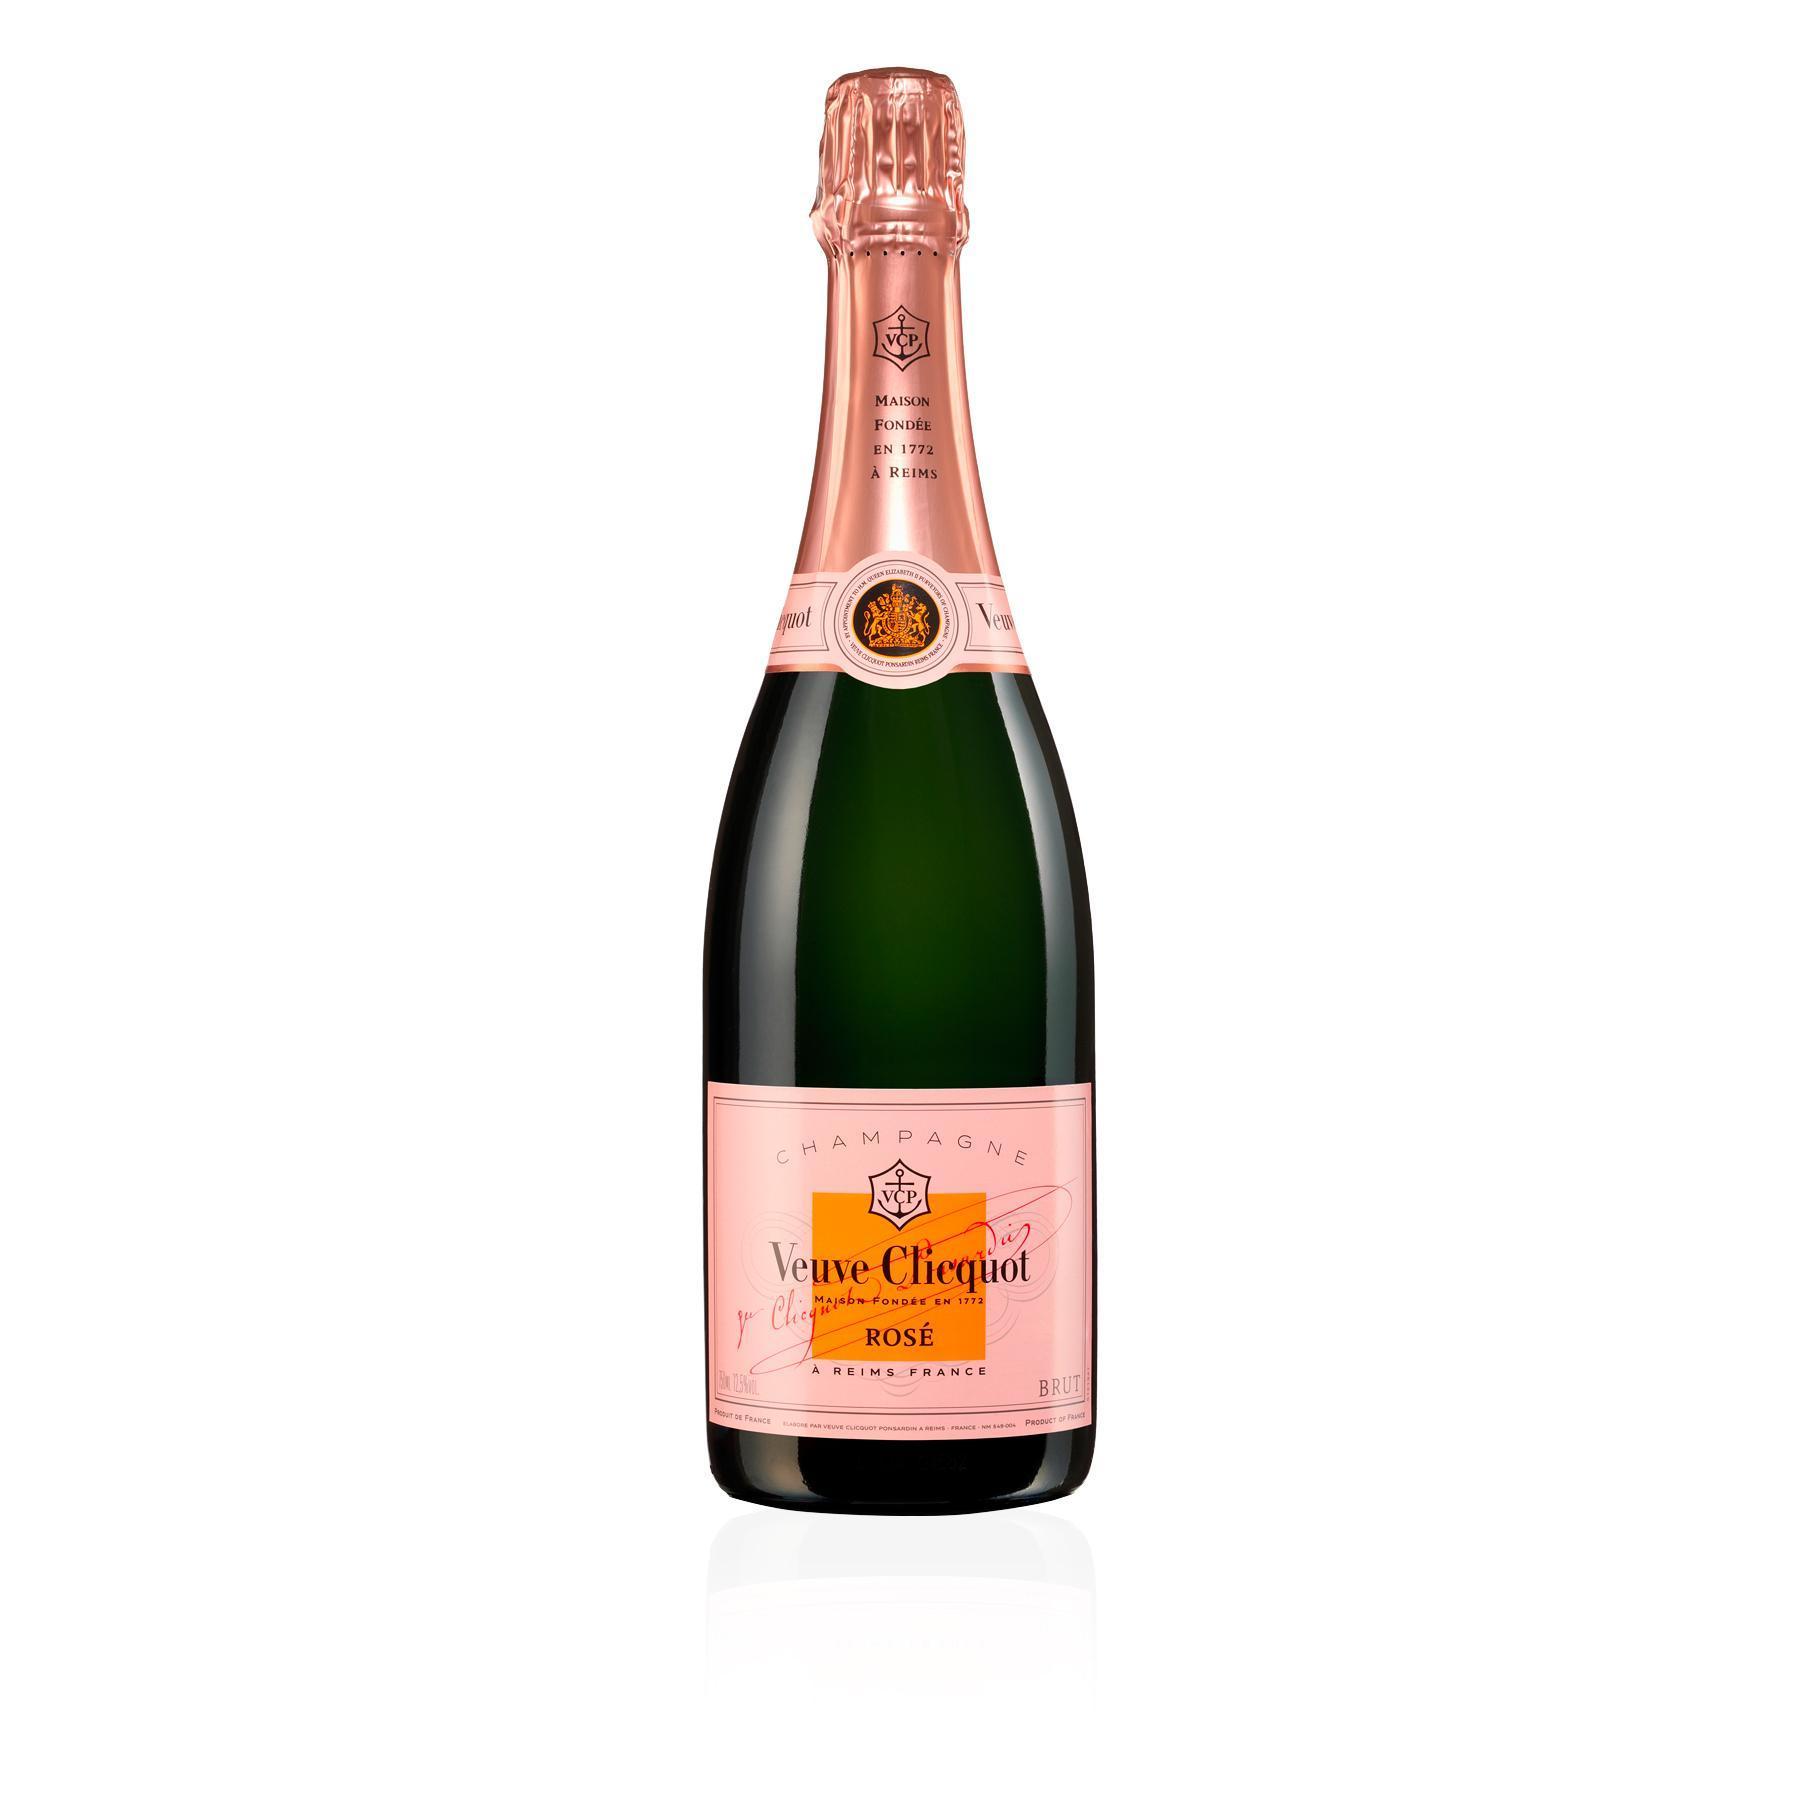 Veuve Clicquot Champagne Rosé Brut 0,75 l